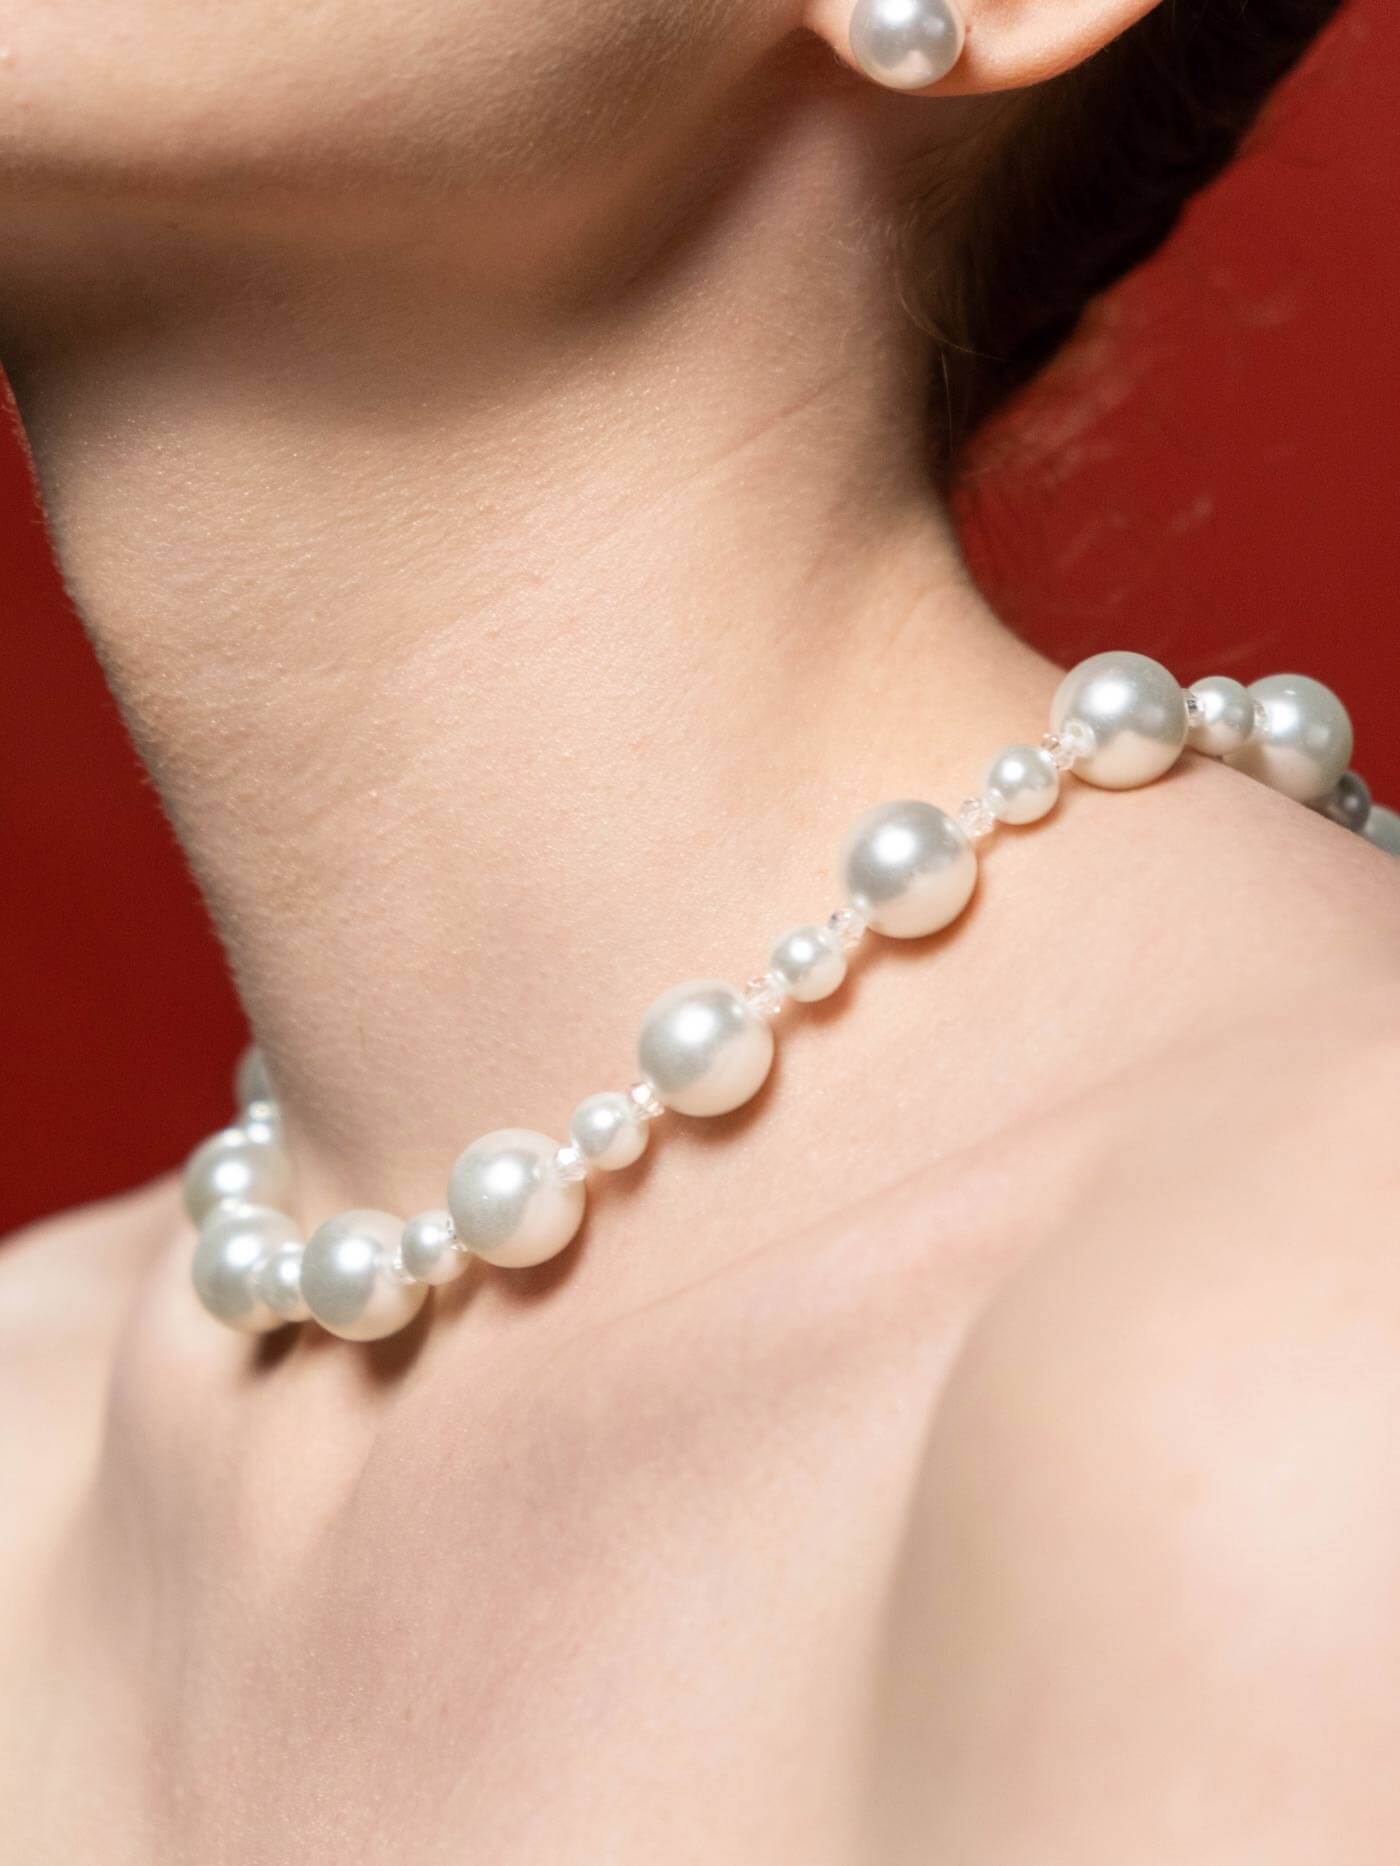 Perlenkette, die um den Hals einer Frau liegt